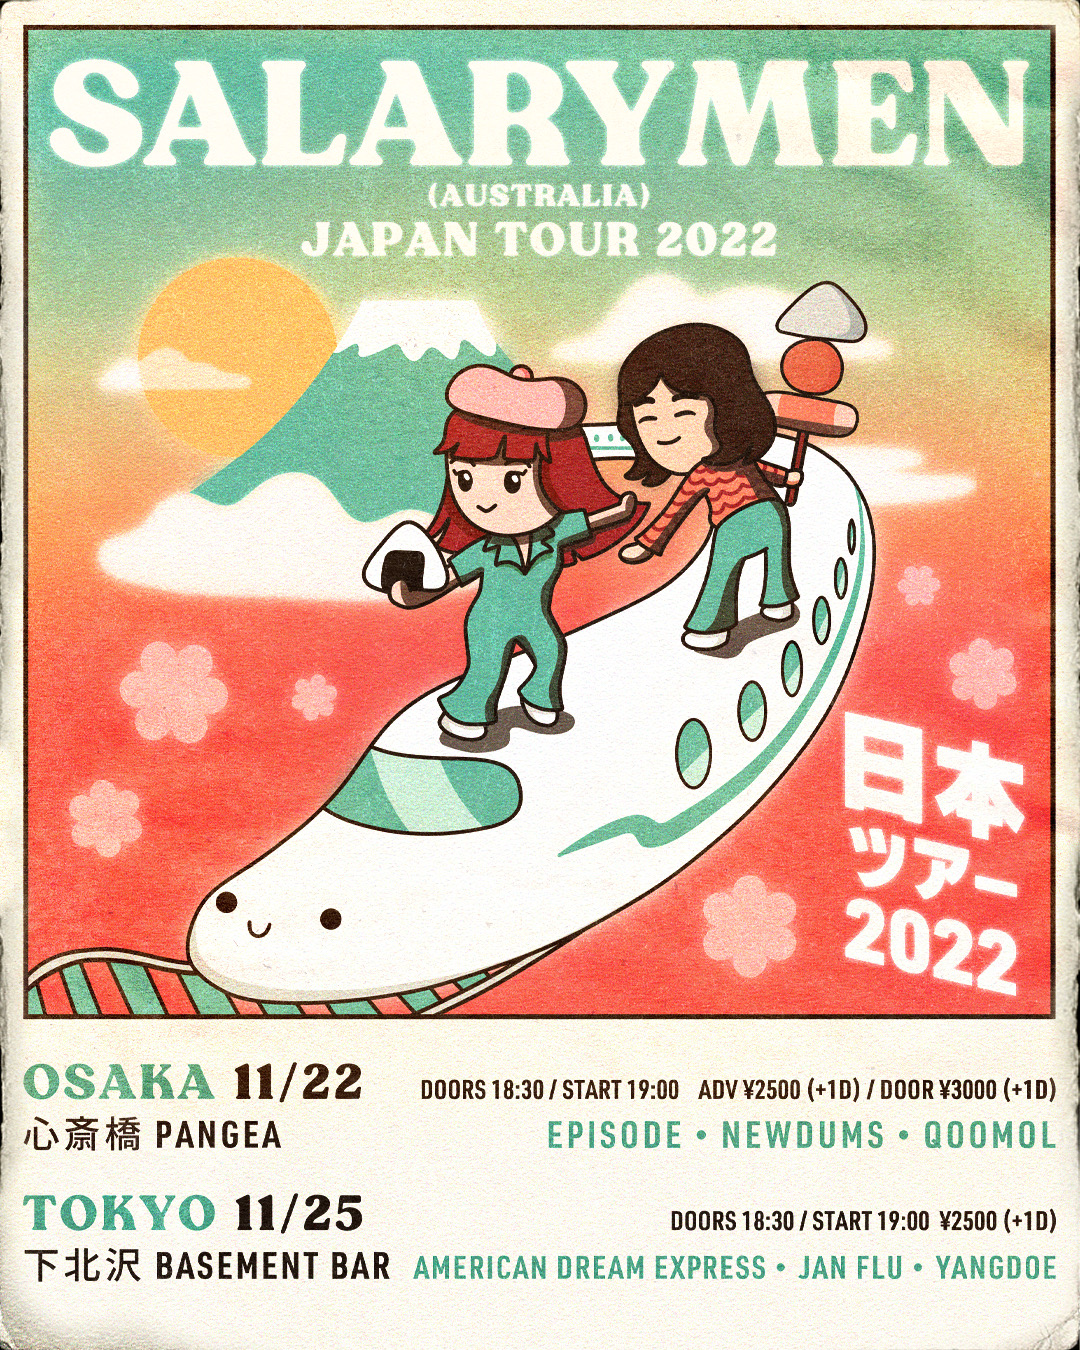 Salarymen JAPAN TOUR 2022